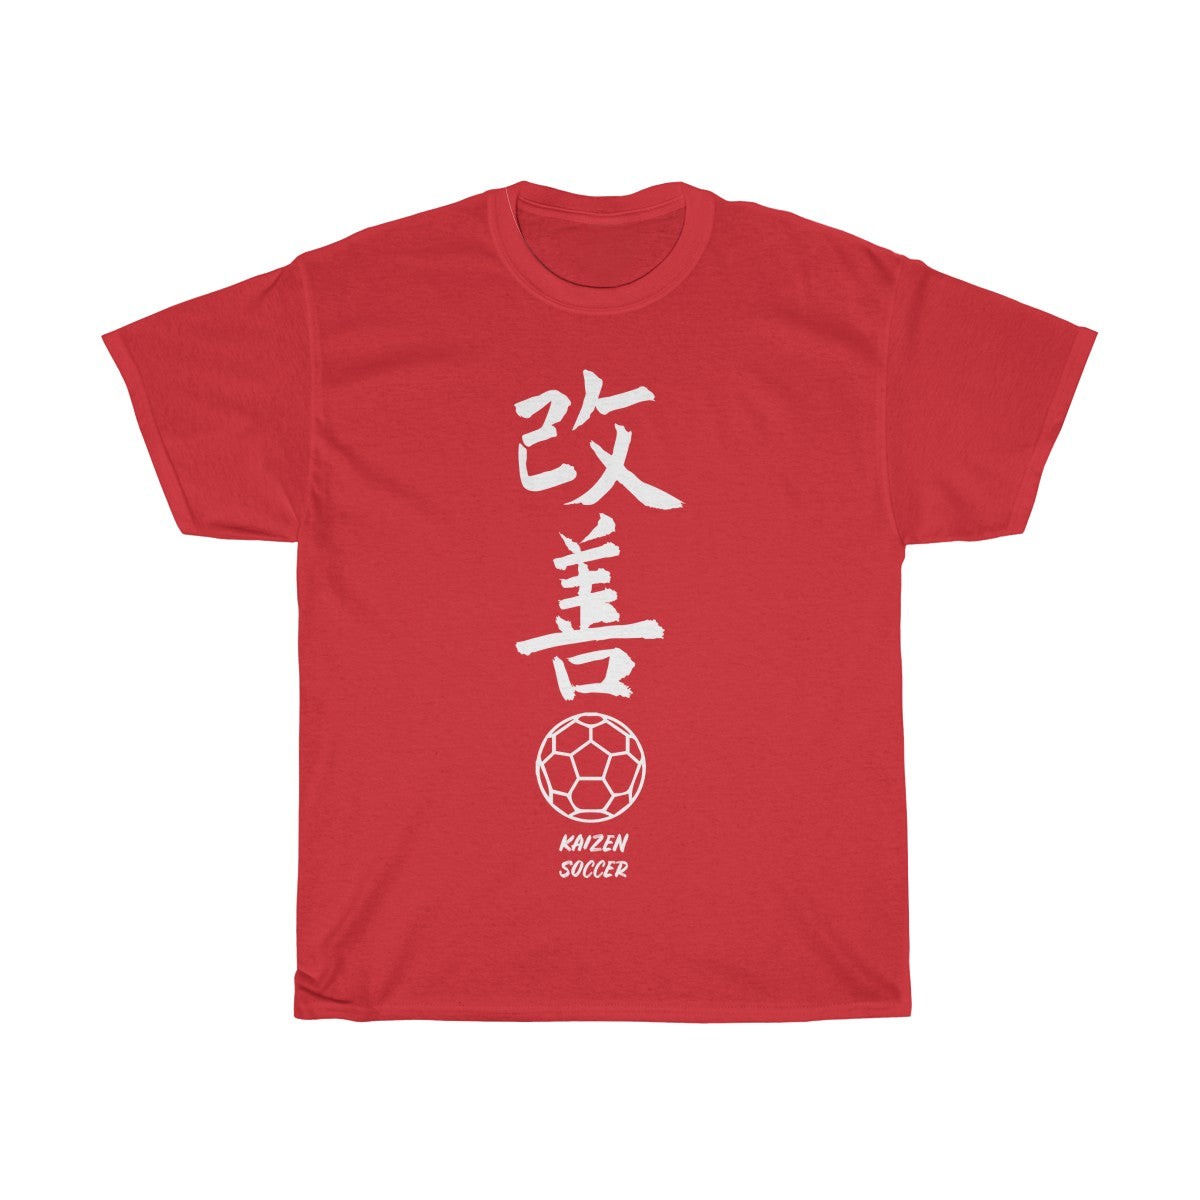 BeckertArtTrio Gym Tee Sacred Gains T-Shirt for The Gym Japanese Inspired Design Shirt Kaizen Philosophy T Shirt Kaizen Quest Jersey Short Sleeve Tee Shirt